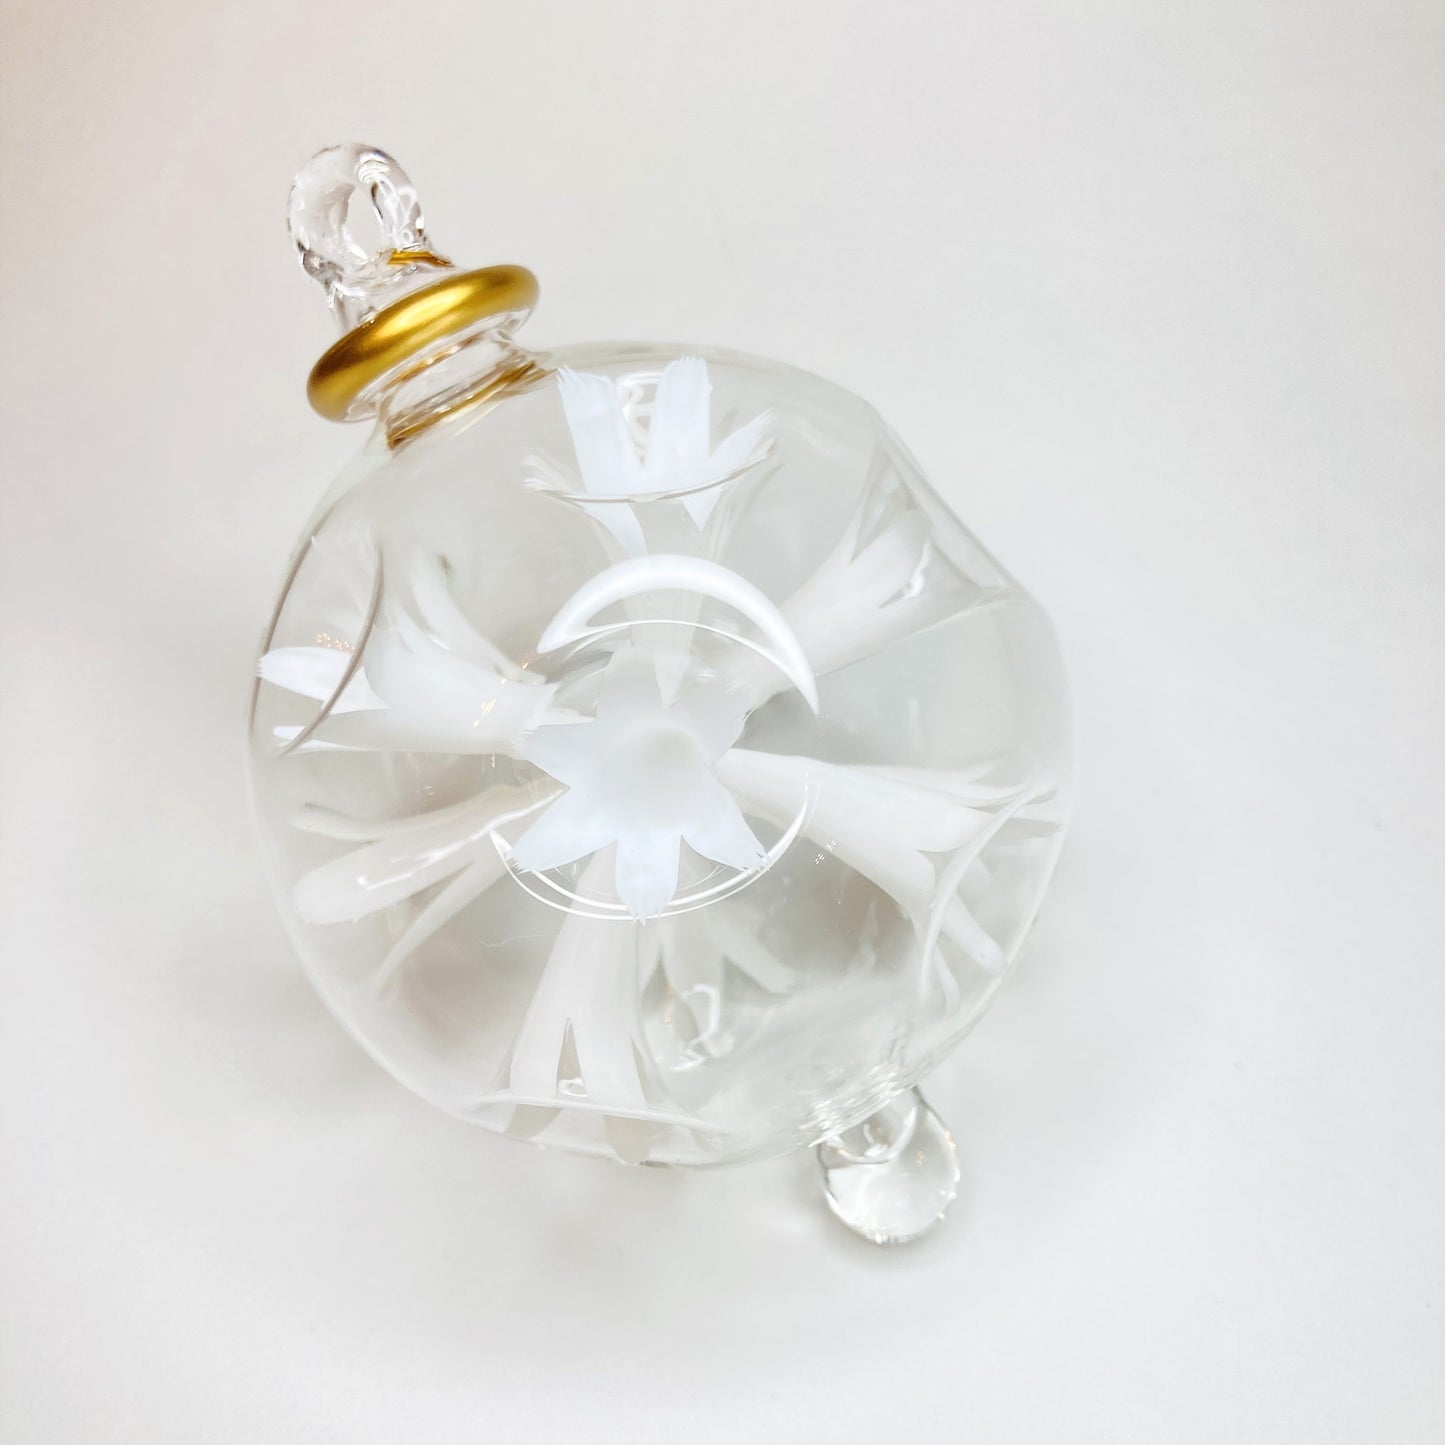 Blown Glass Ornament - Blossoms White